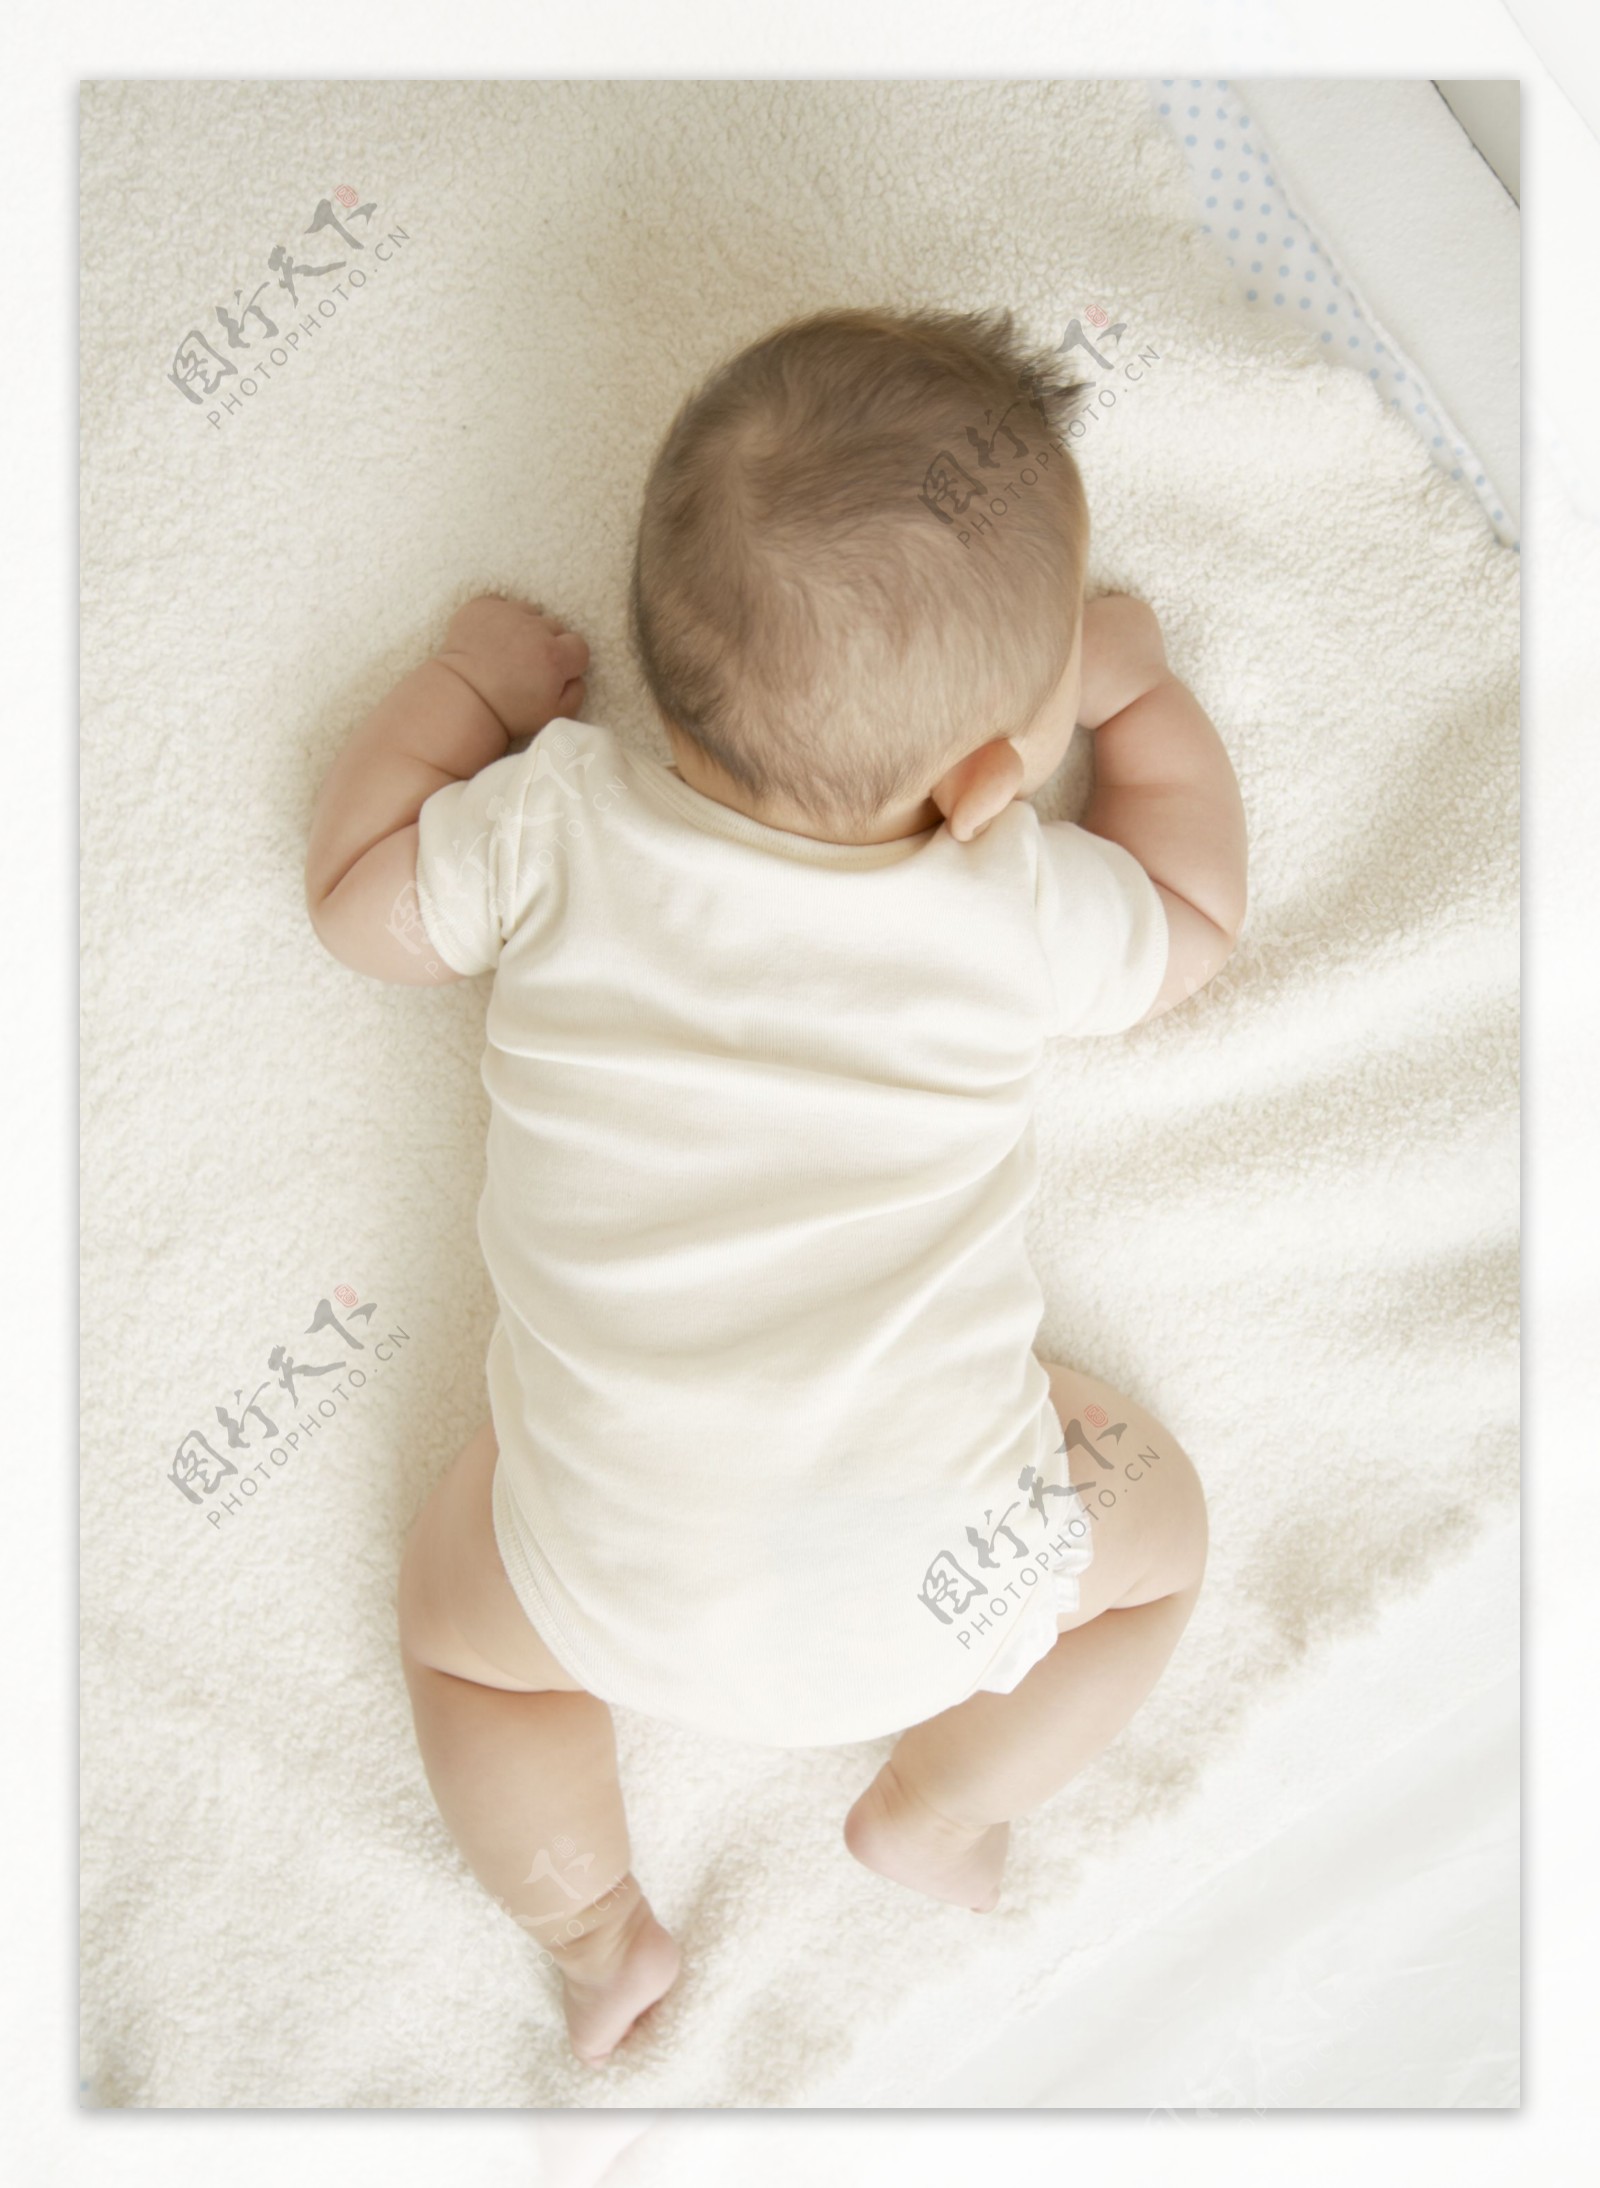 趴着的可爱婴儿宝宝图片